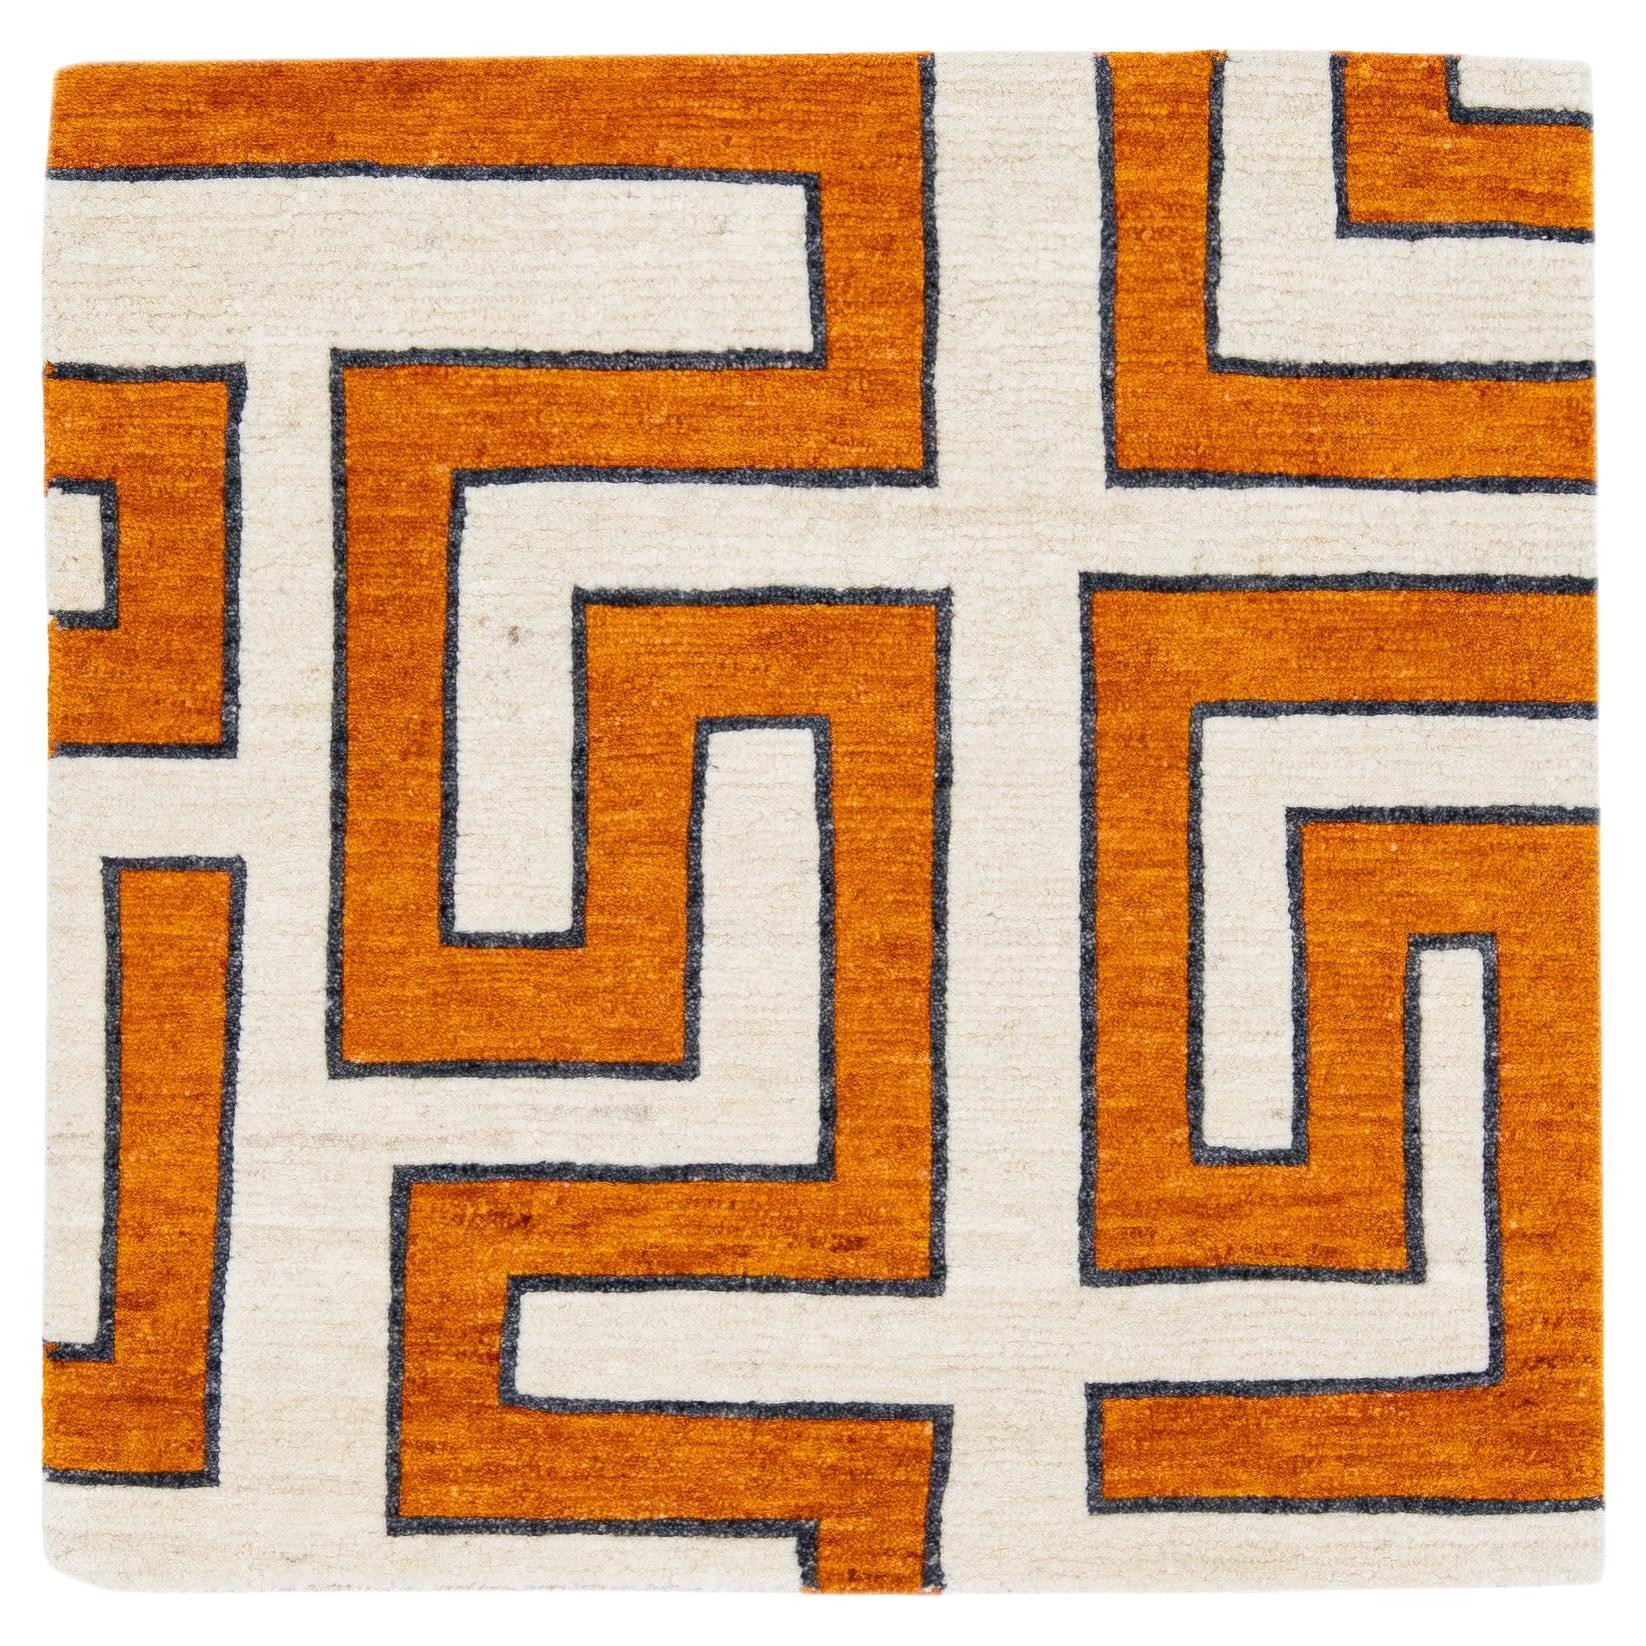 Tapis en laine personnalisé, géométrique, moderne et orange, fait à la main